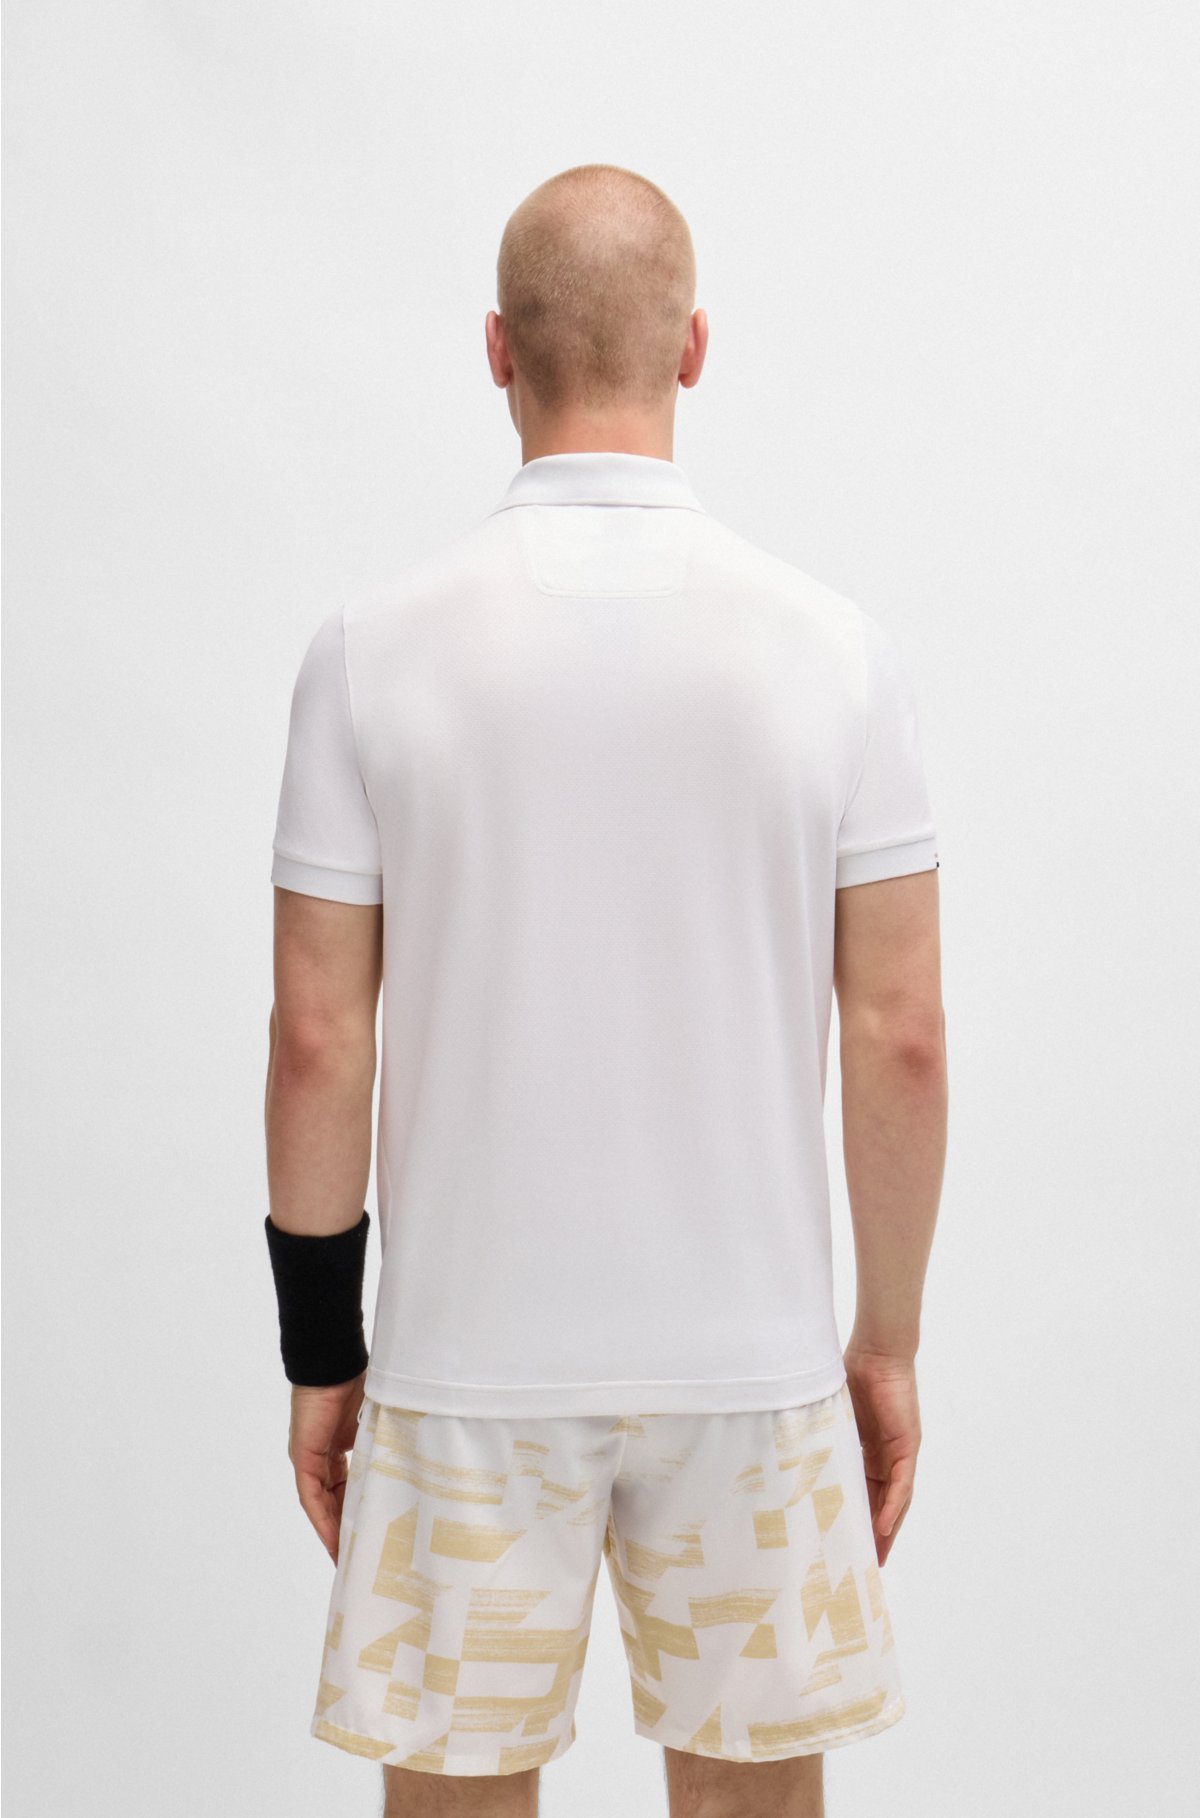 BOSS x Matteo Berrettini V-insert slim-fit polo shirt , White